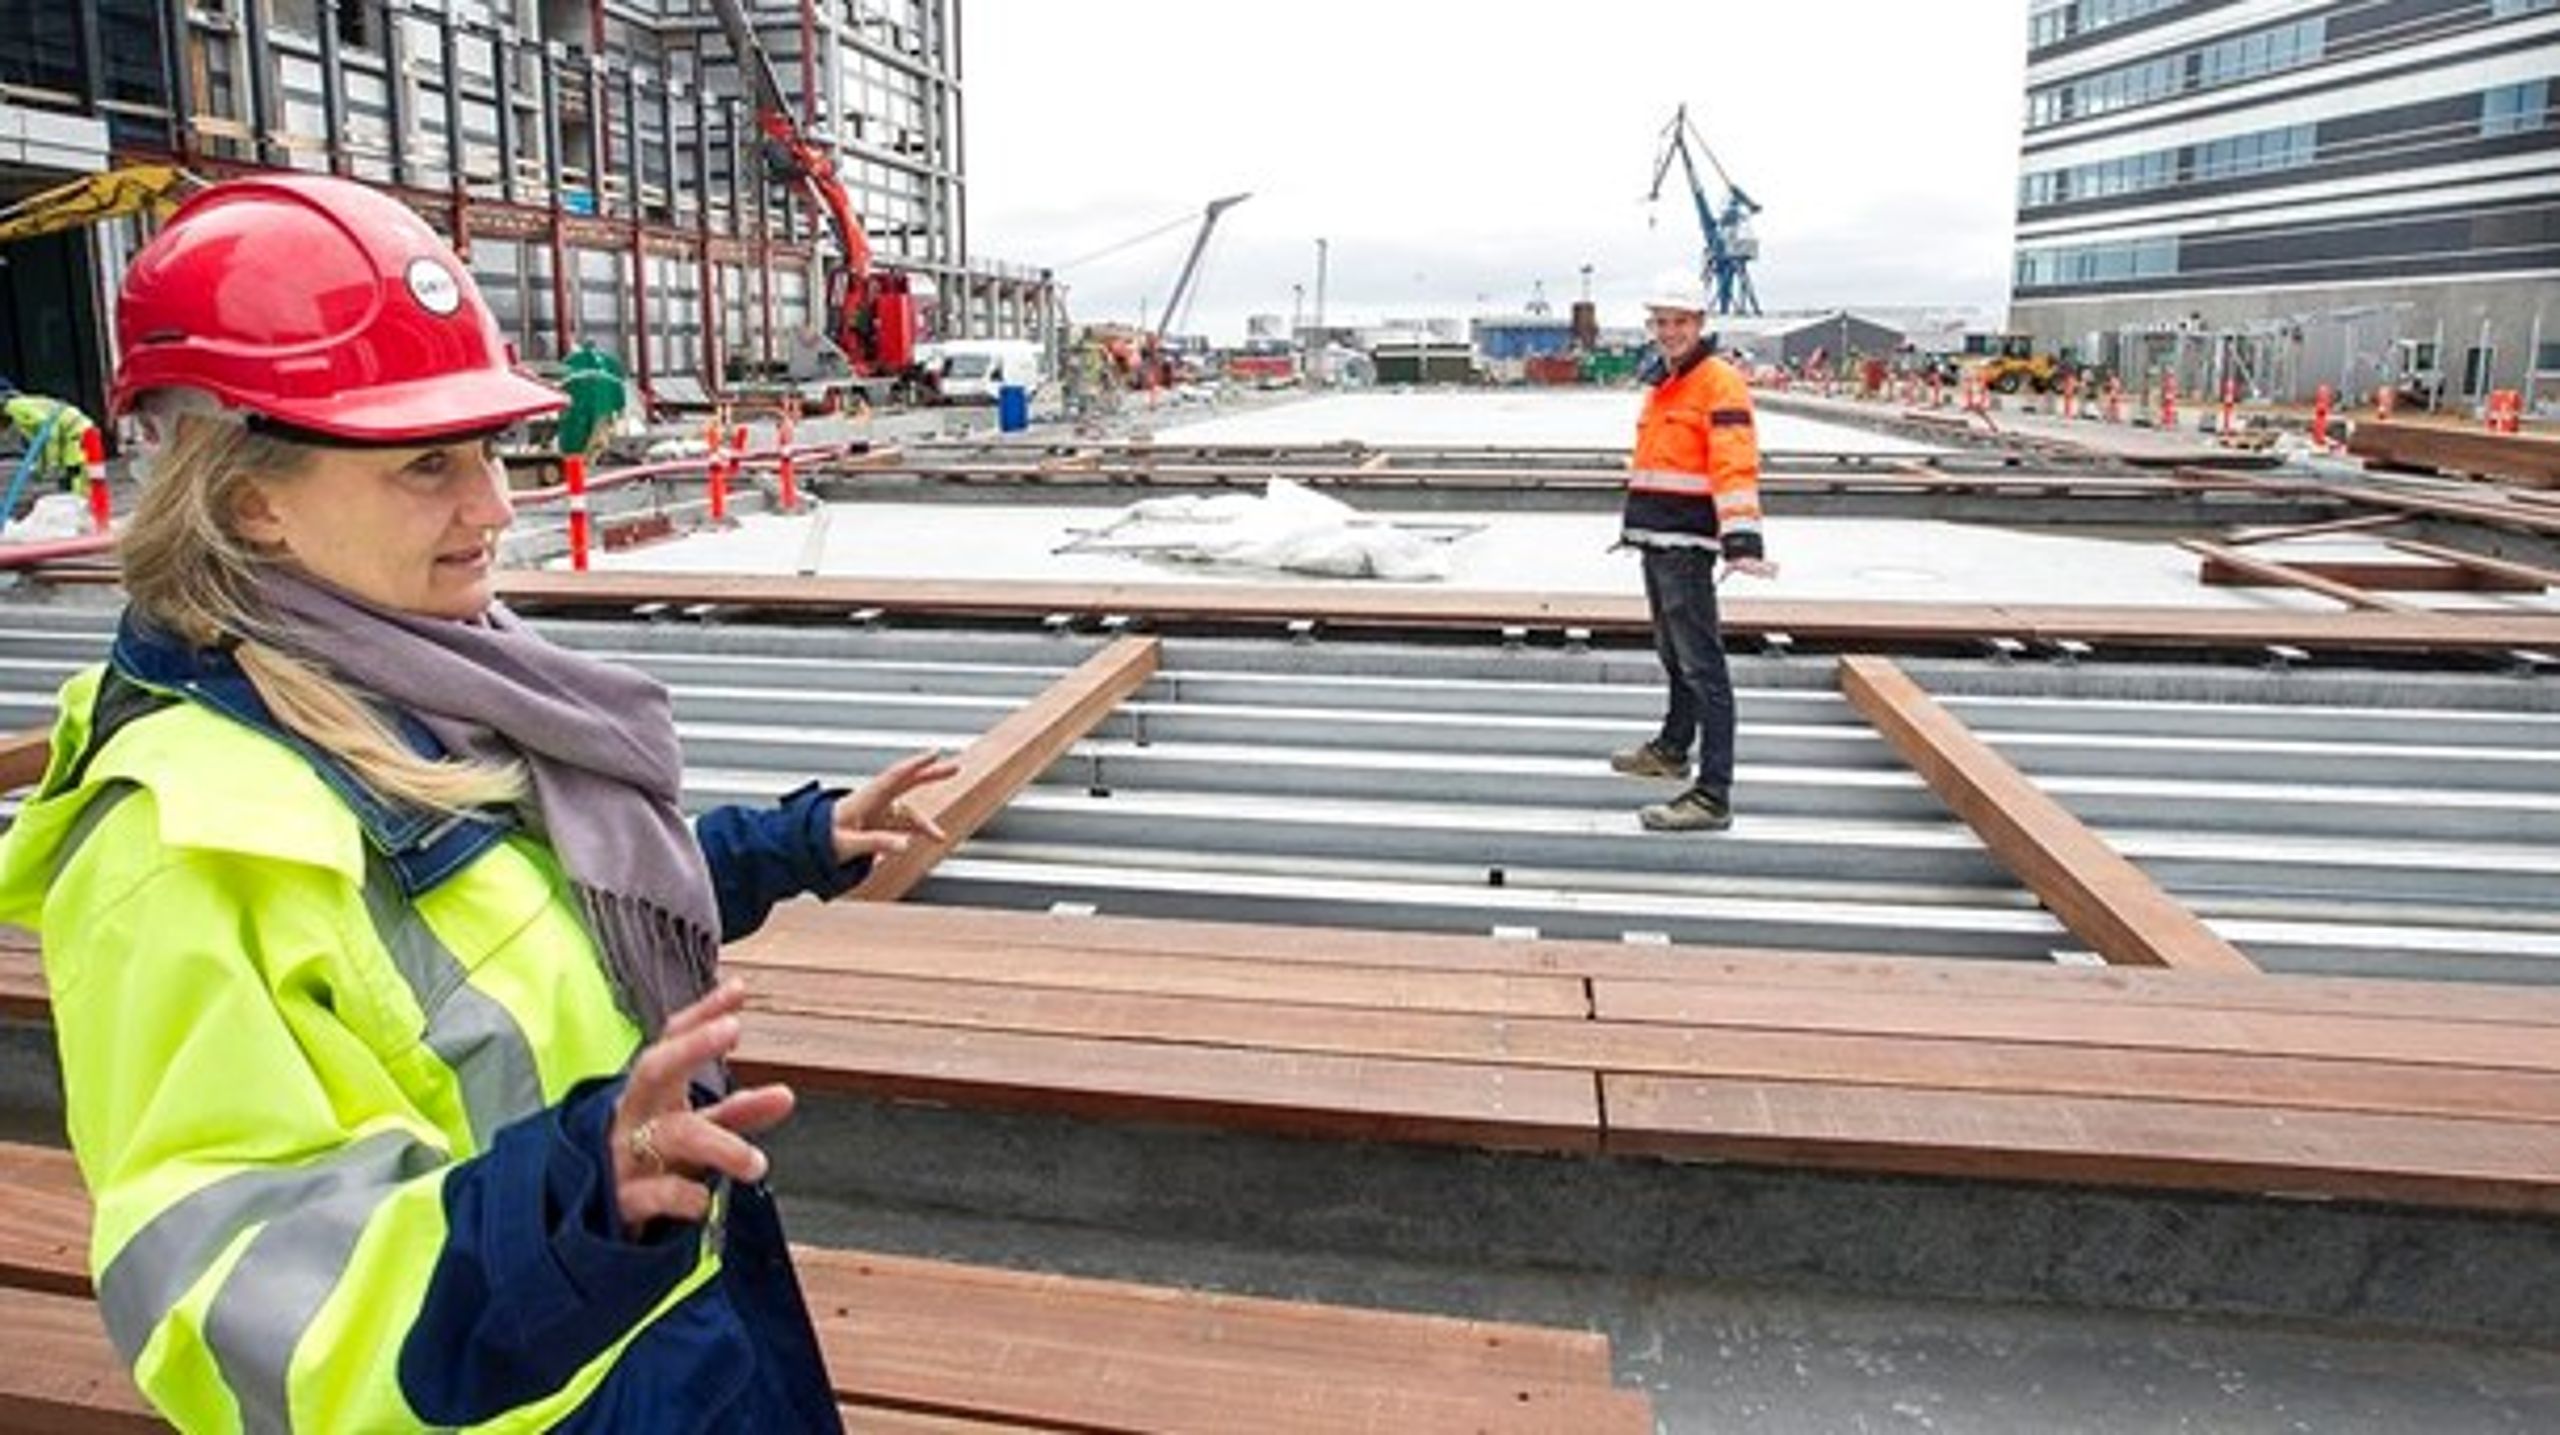 Byduvikling omkring havnen i Aarhus trak i 2016&nbsp;så store veksler på kommunens anlægsudgifter, at det påvirker kommunernes samlede evne til at holde sig inden for økonomiaftalens anlægsramme.